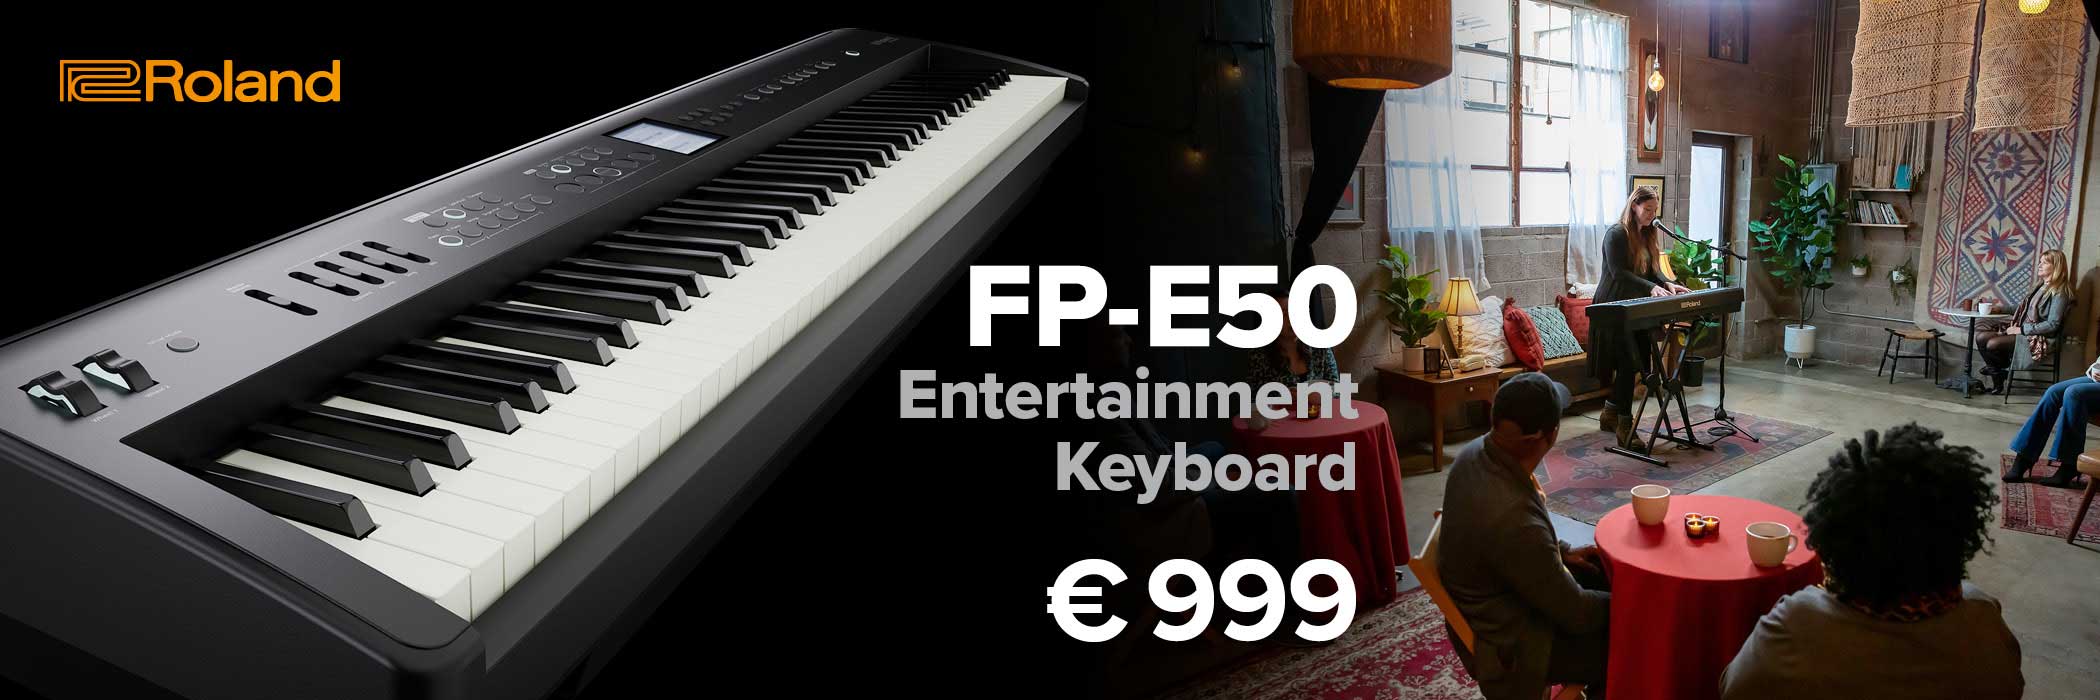 Banner für Roland FP-E50 Digitalpiano